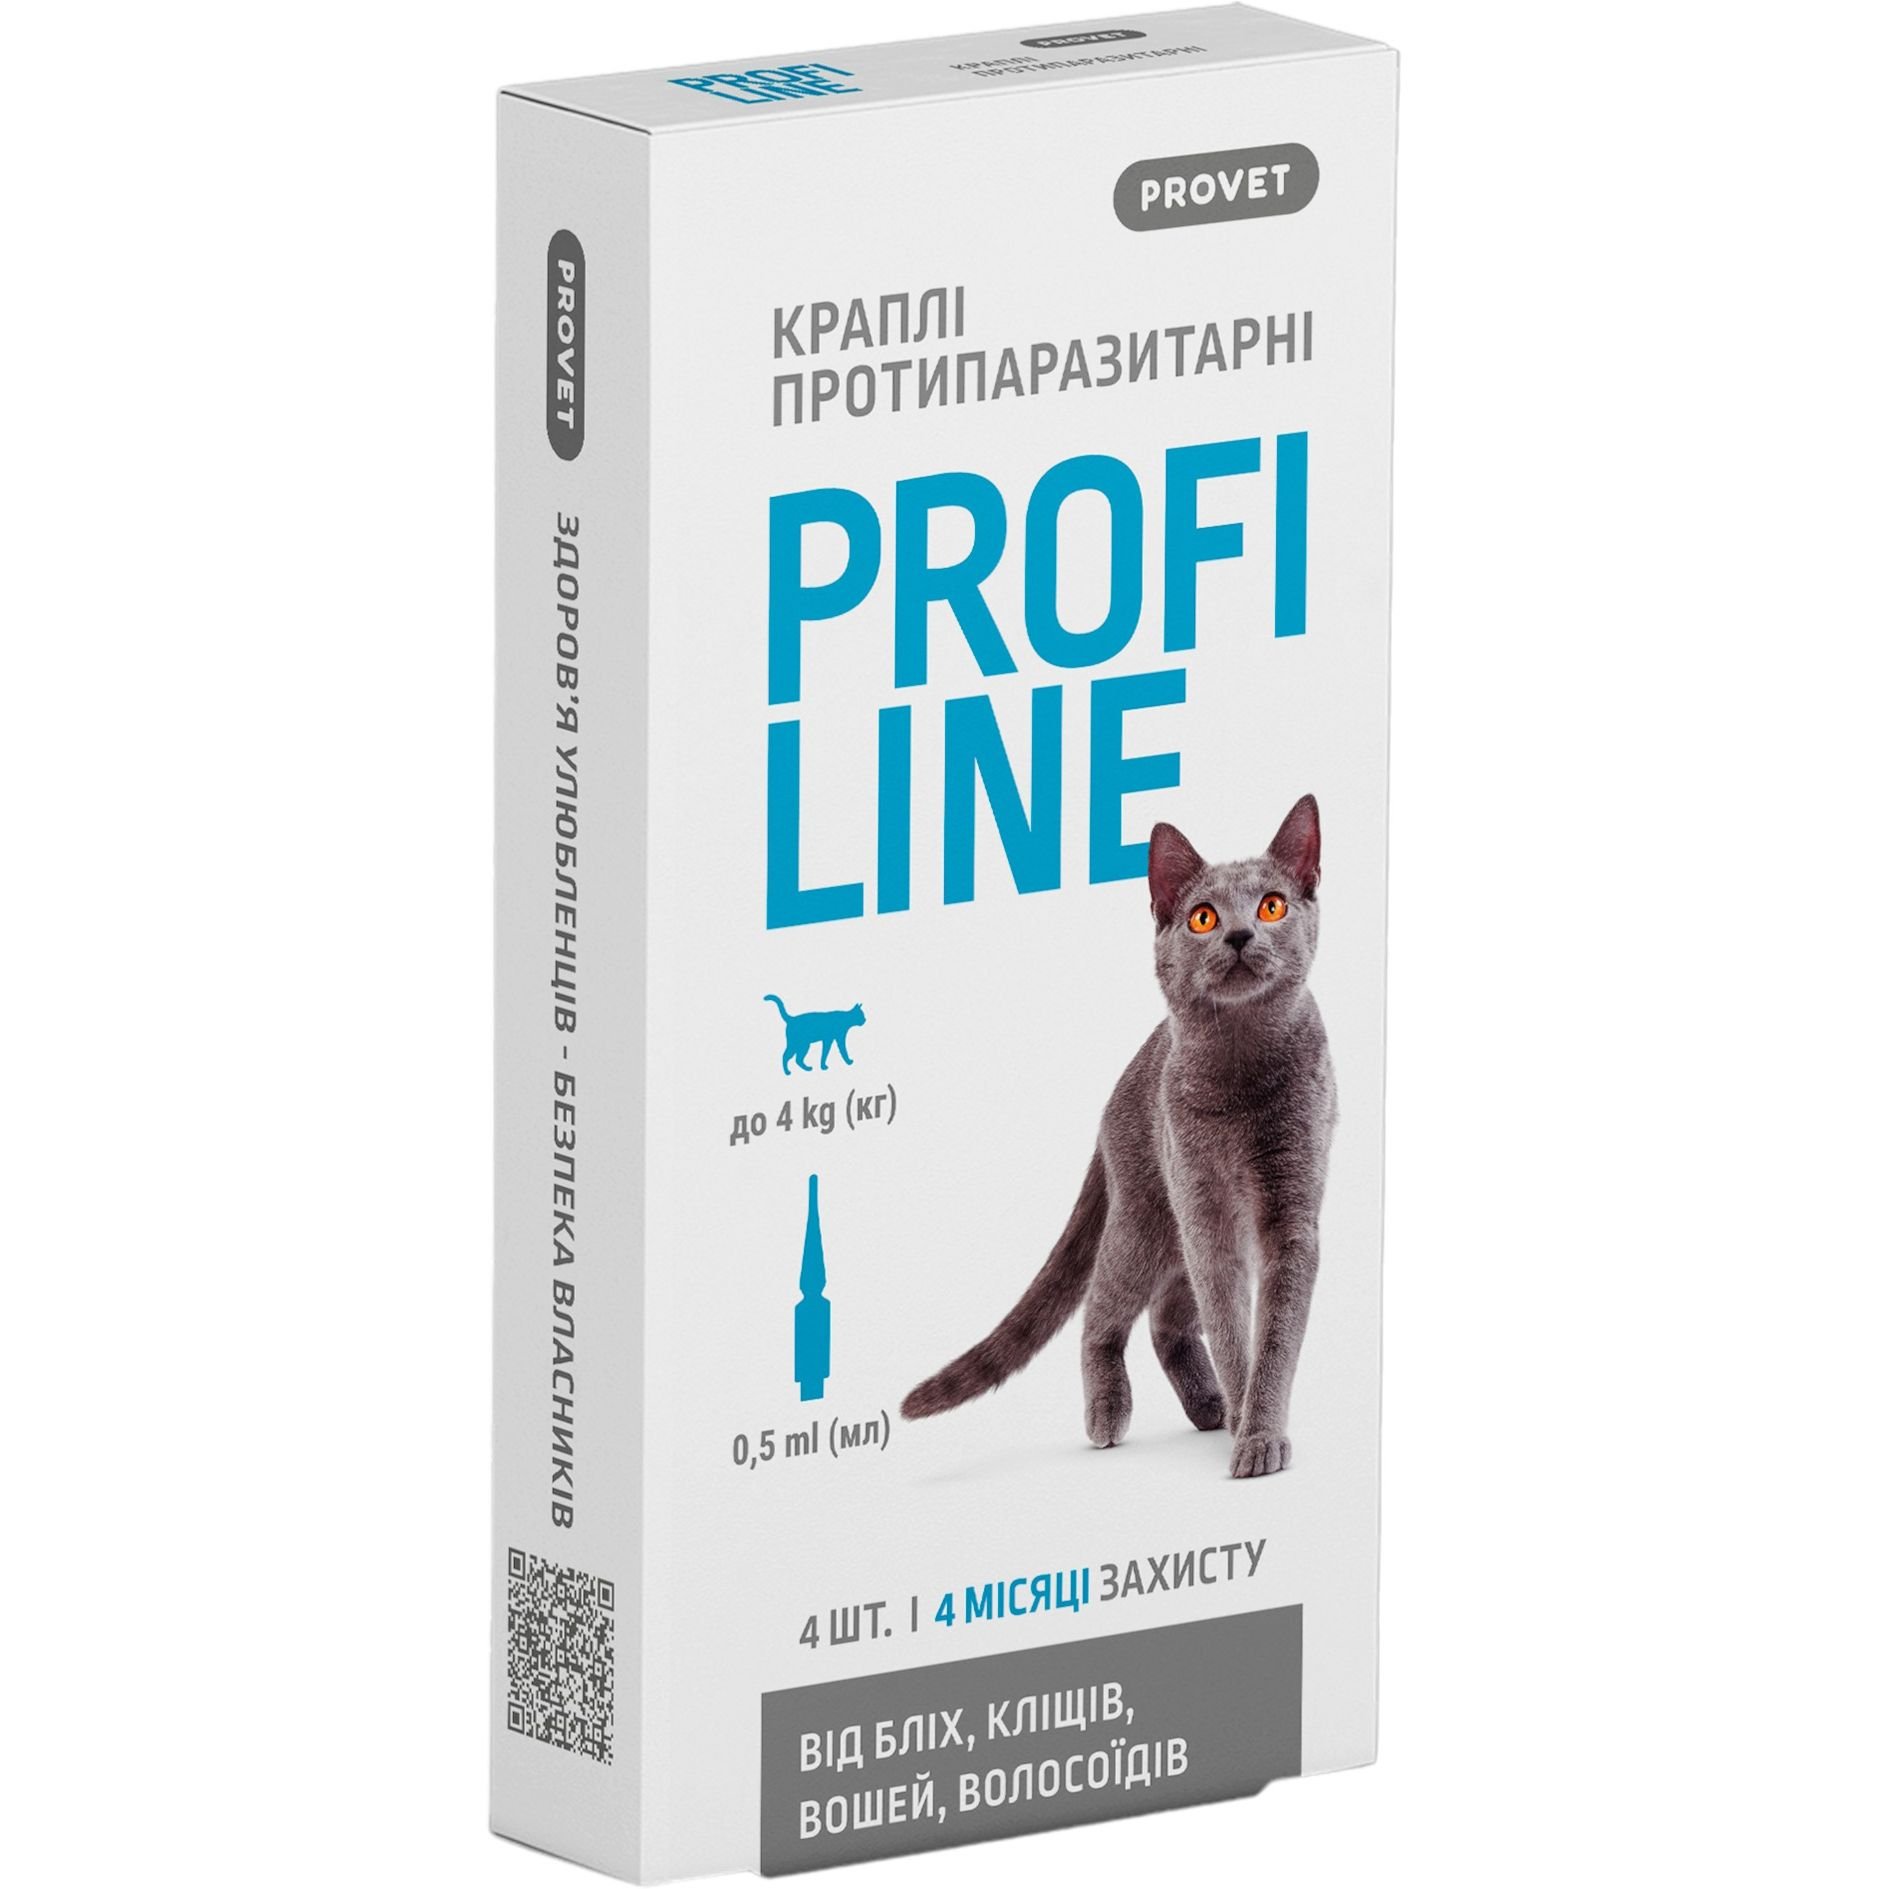 Краплі на холку для котів ProVET Profiline від зовнішніх паразитів, до 4 кг, 4 піпетки по 0.5 мл - фото 1